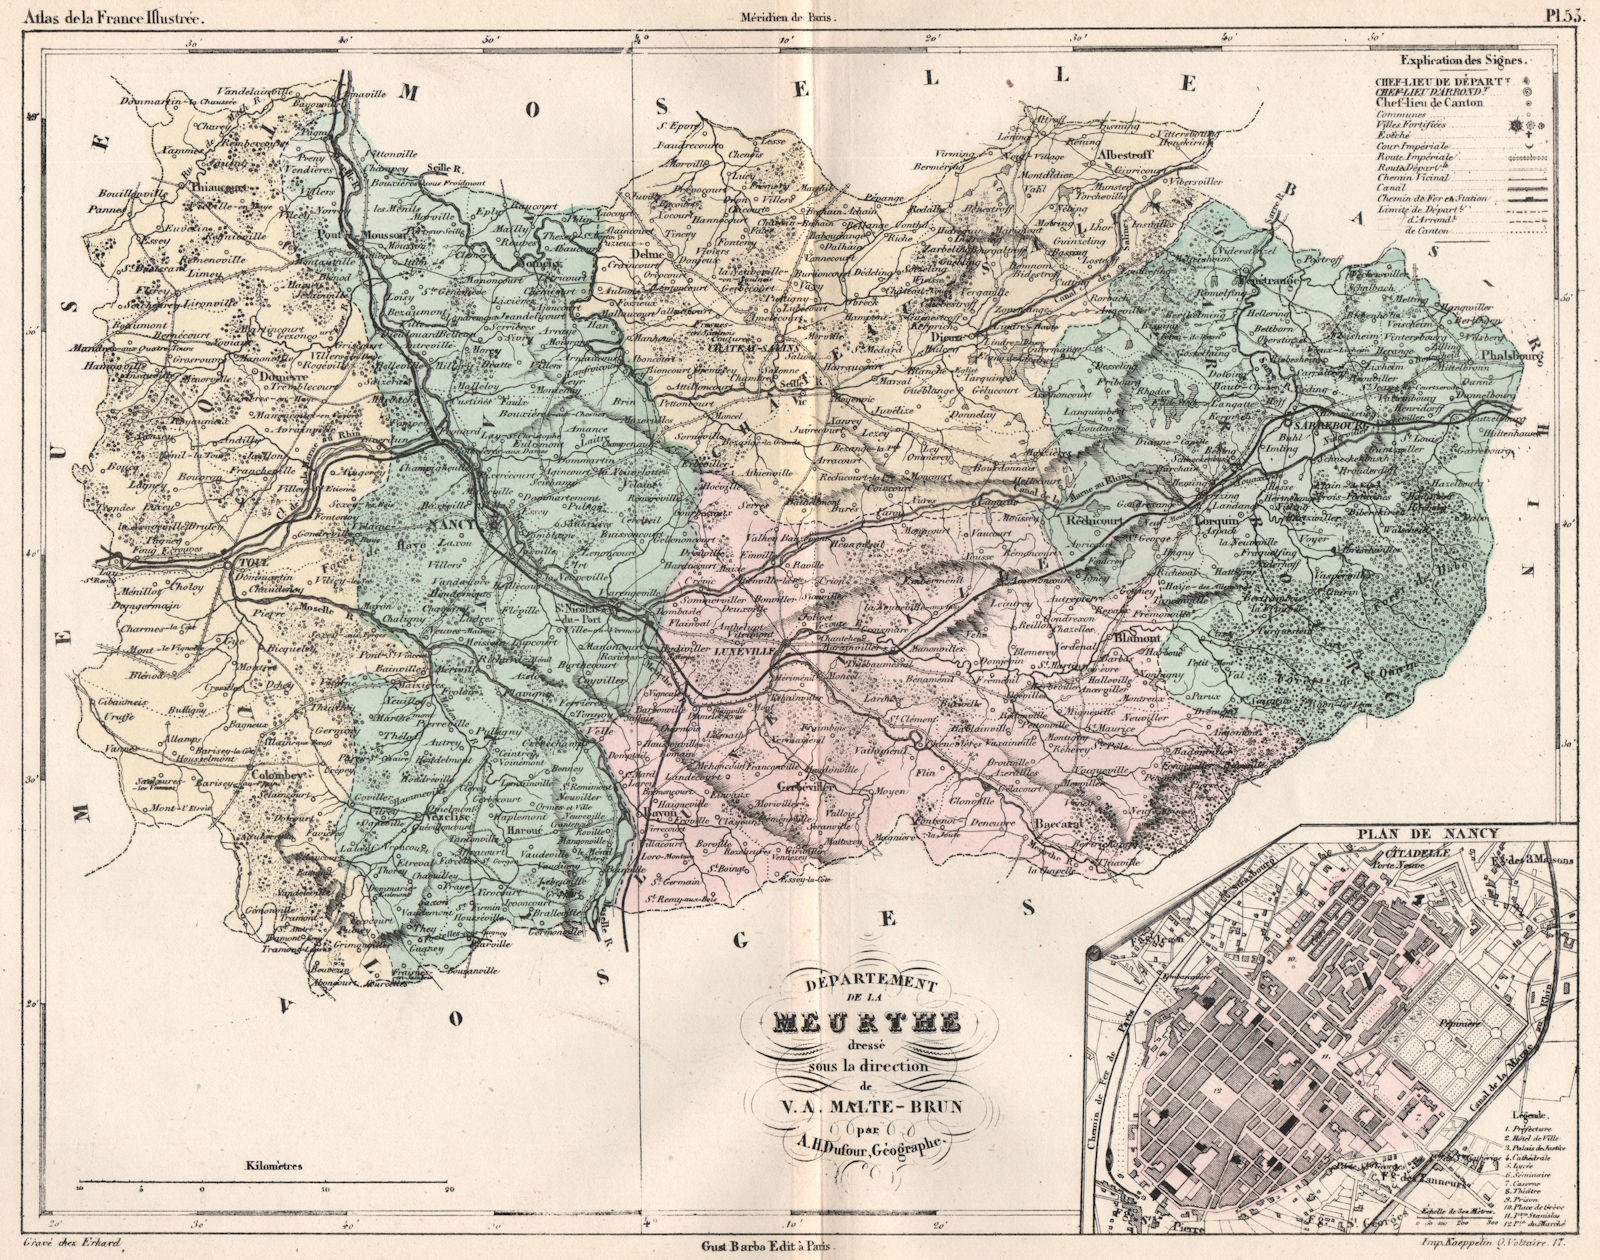 MEURTHE. Carte du département. Plan de Nancy. MALTE-BRUN 1852 old antique map